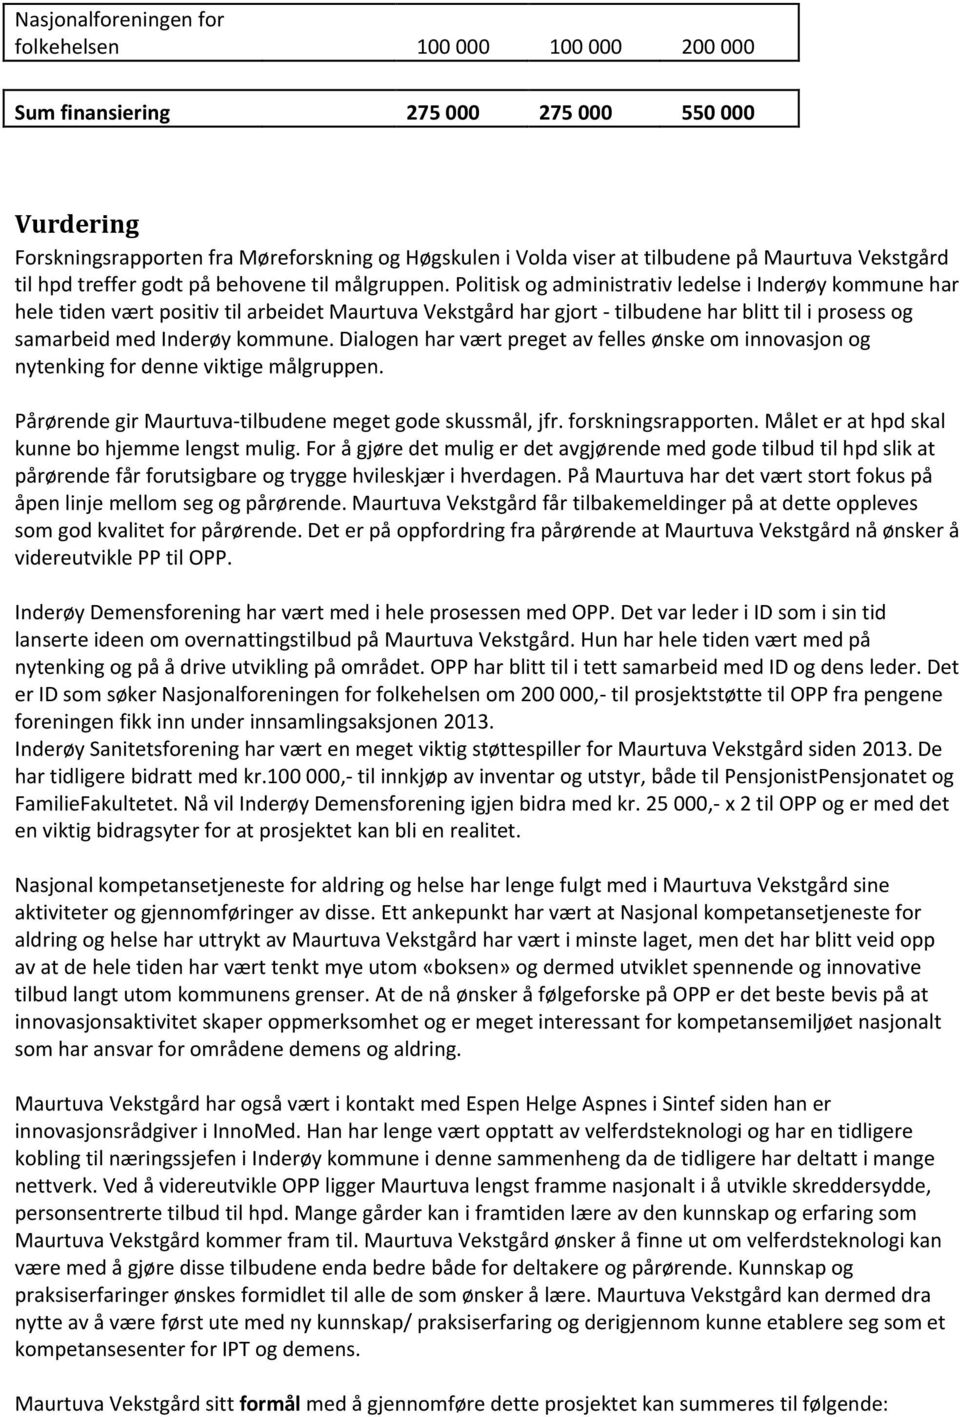 Politisk og administrativ ledelse i Inderøy kommune har hele tiden vært positiv til arbeidet Maurtuva Vekstgård har gjort - tilbudene har blitt til i prosess og samarbeid med Inderøy kommune.